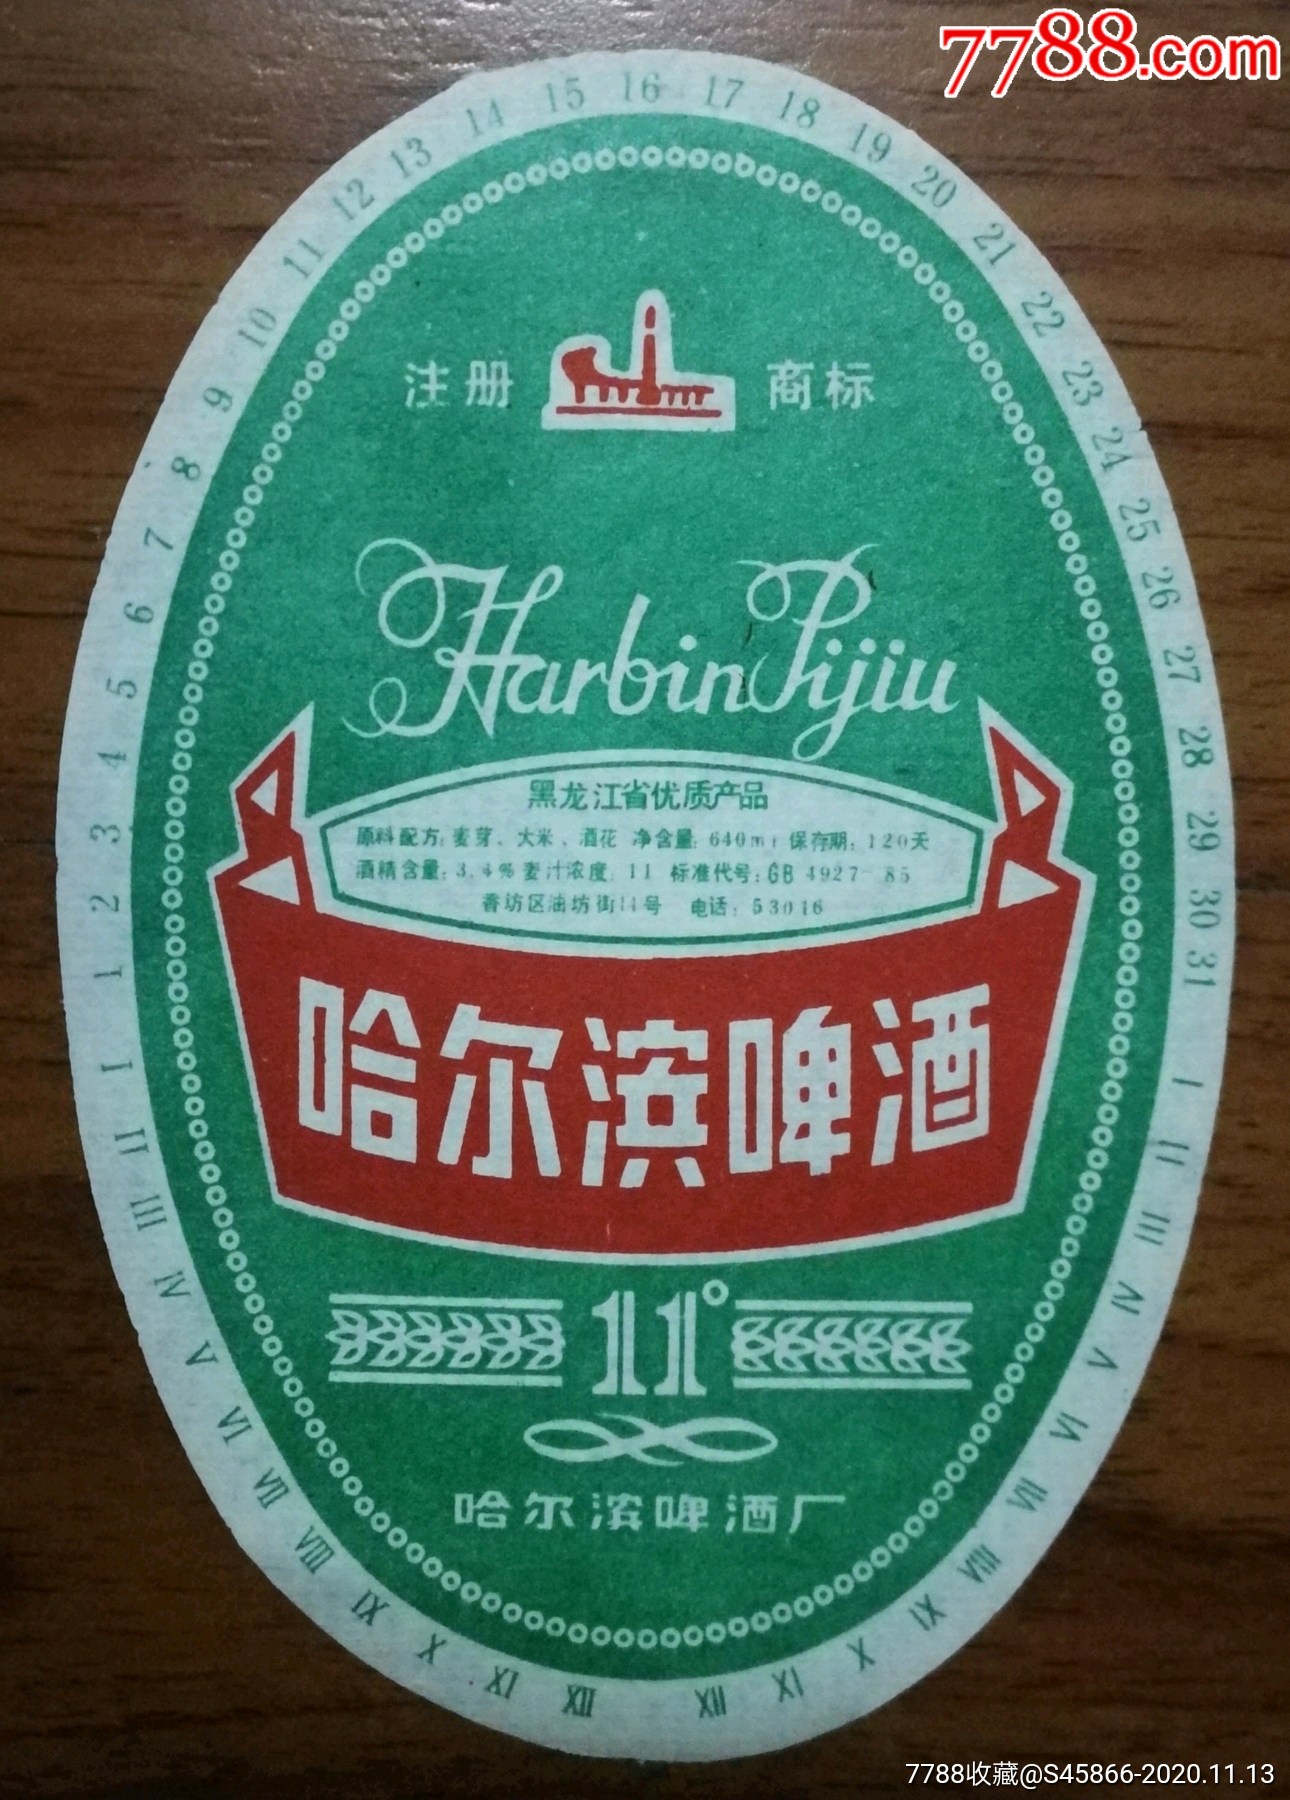 每天上架一点酒标有1千多】老标黑龙江省优质产品哈尔滨啤酒11度640